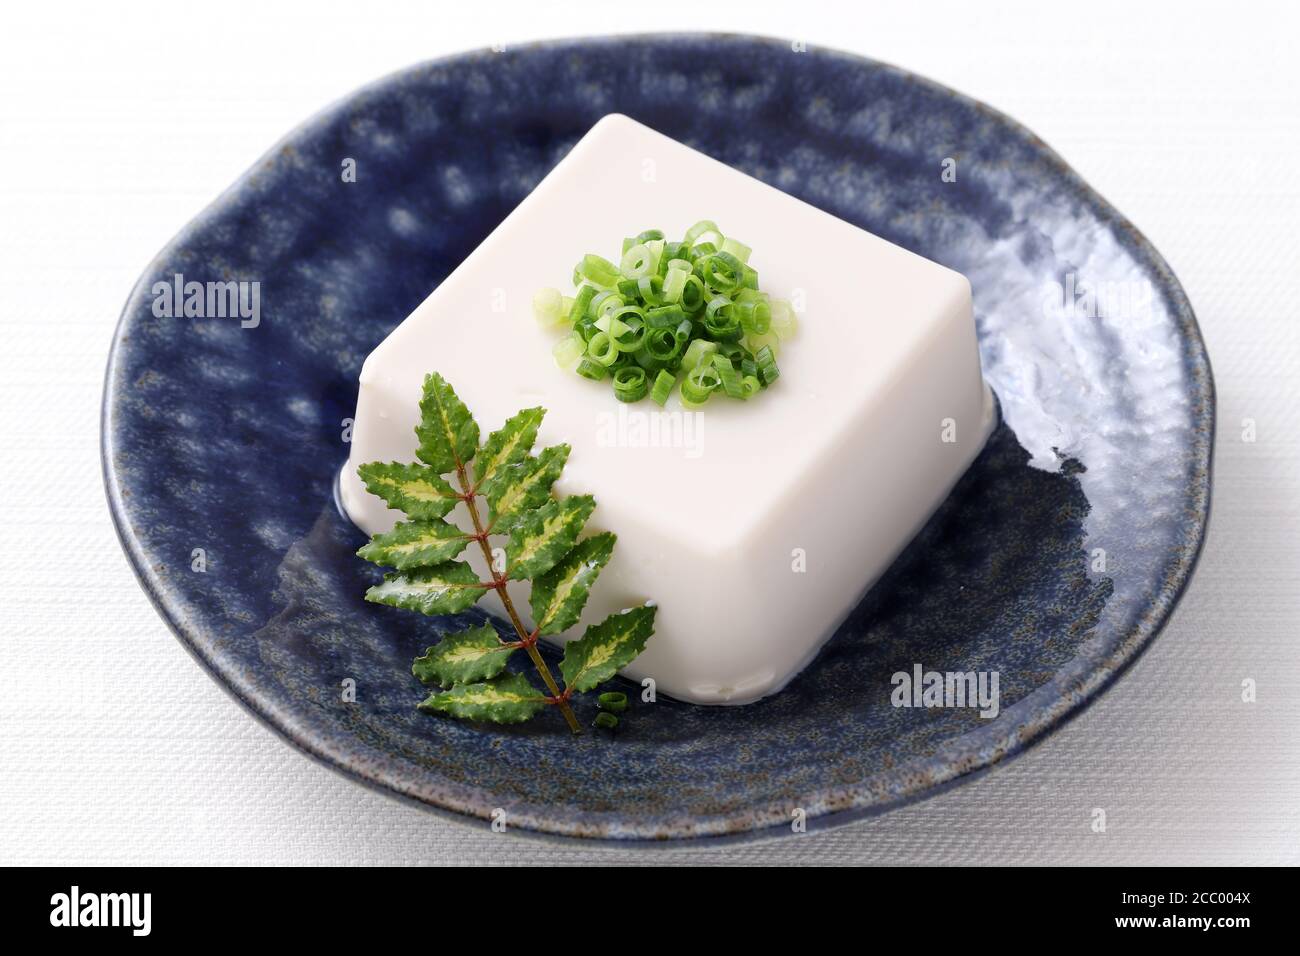 Cuisine japonaise, tofu japonais doux et froid dans un bol sur fond blanc Banque D'Images